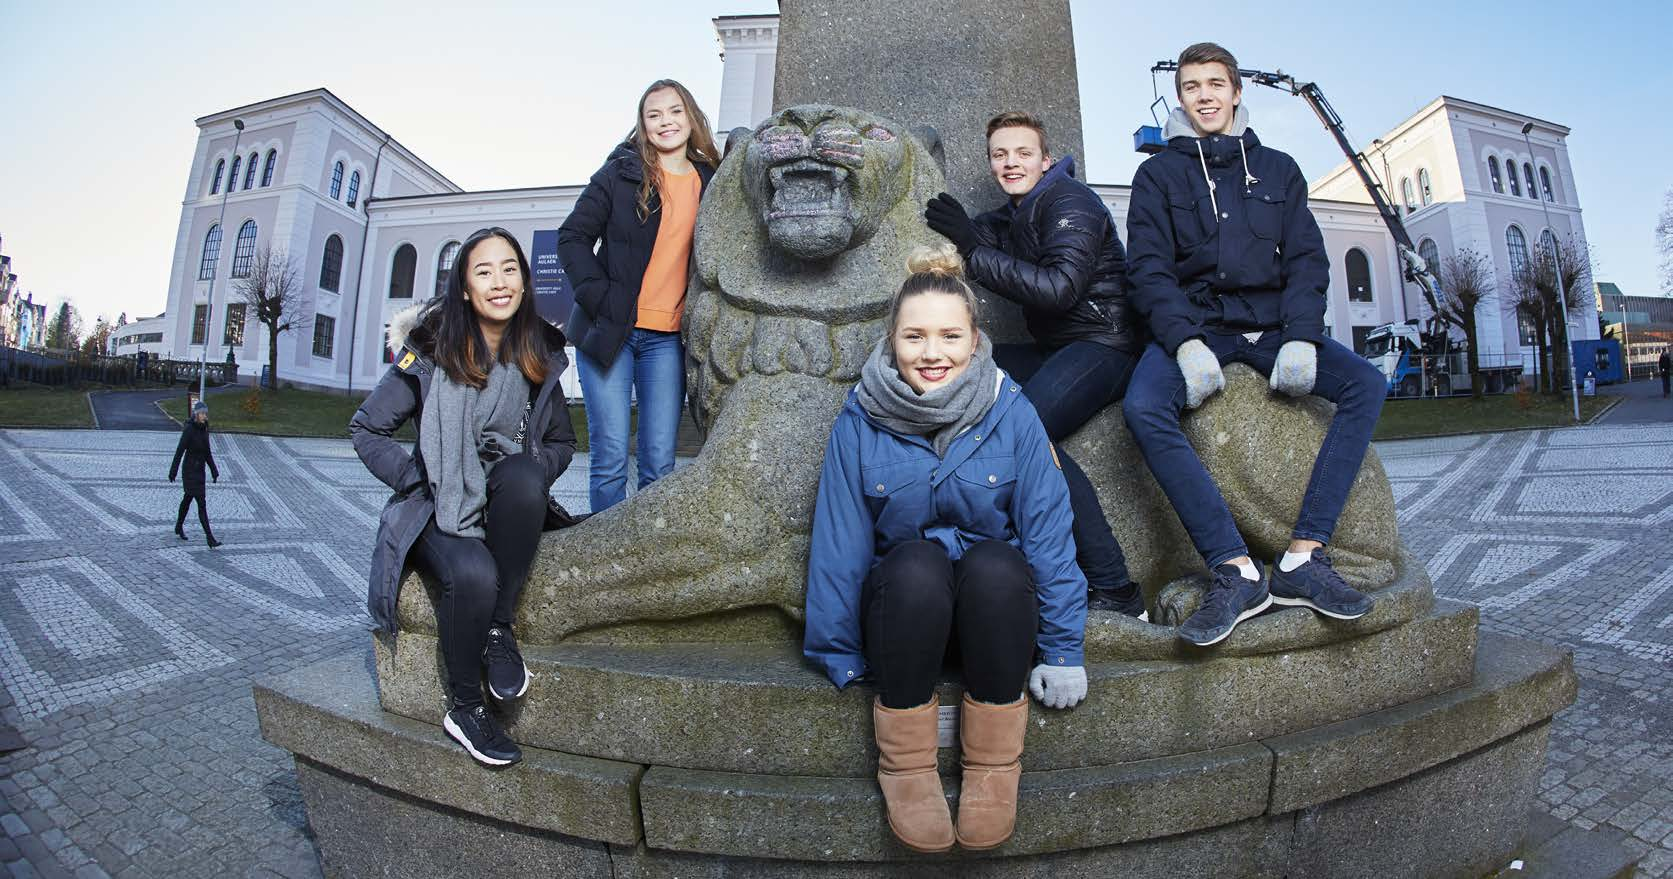 Bli student mens du tar videregående Universitetslinjen krever mer av deg St. Paul gymnas har inngått et samarbeid med Universitetet i Bergen (UiB) og opprettet en egen universitetslinje.